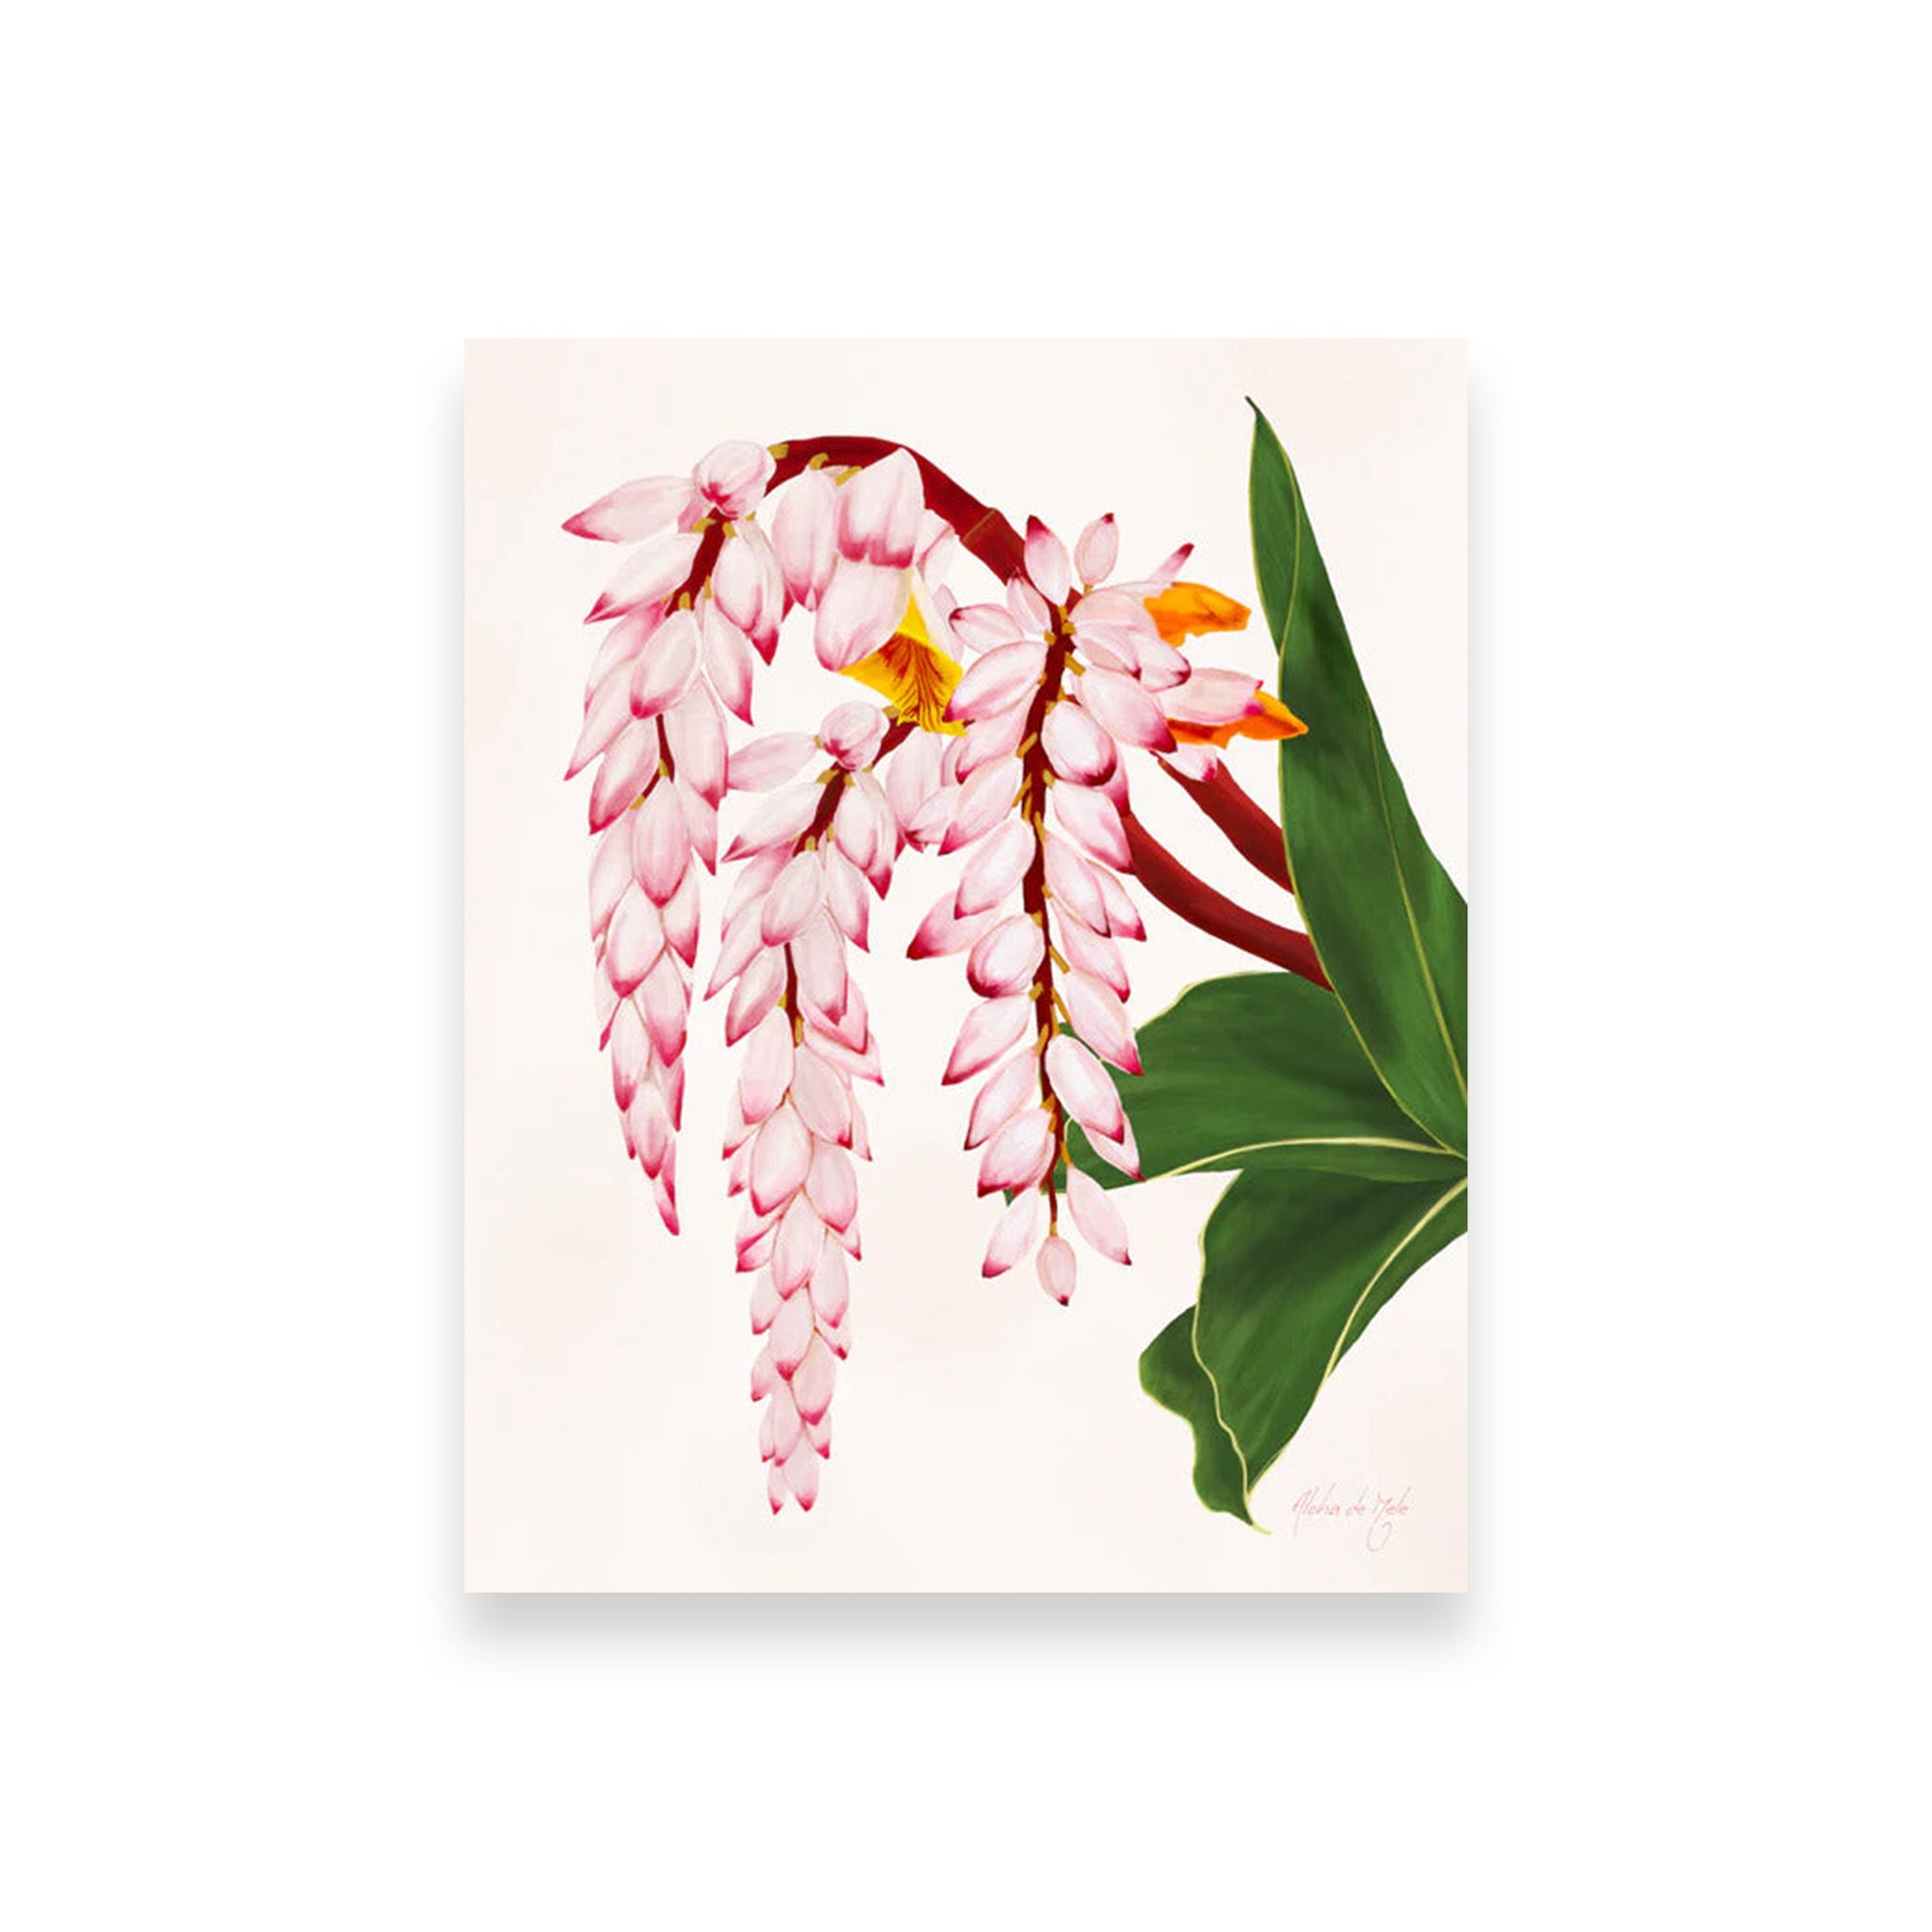 Pop-Up Mākeke - Aloha de Mele - Shell Ginger - 5x7 Art Print in 8x10 Mat